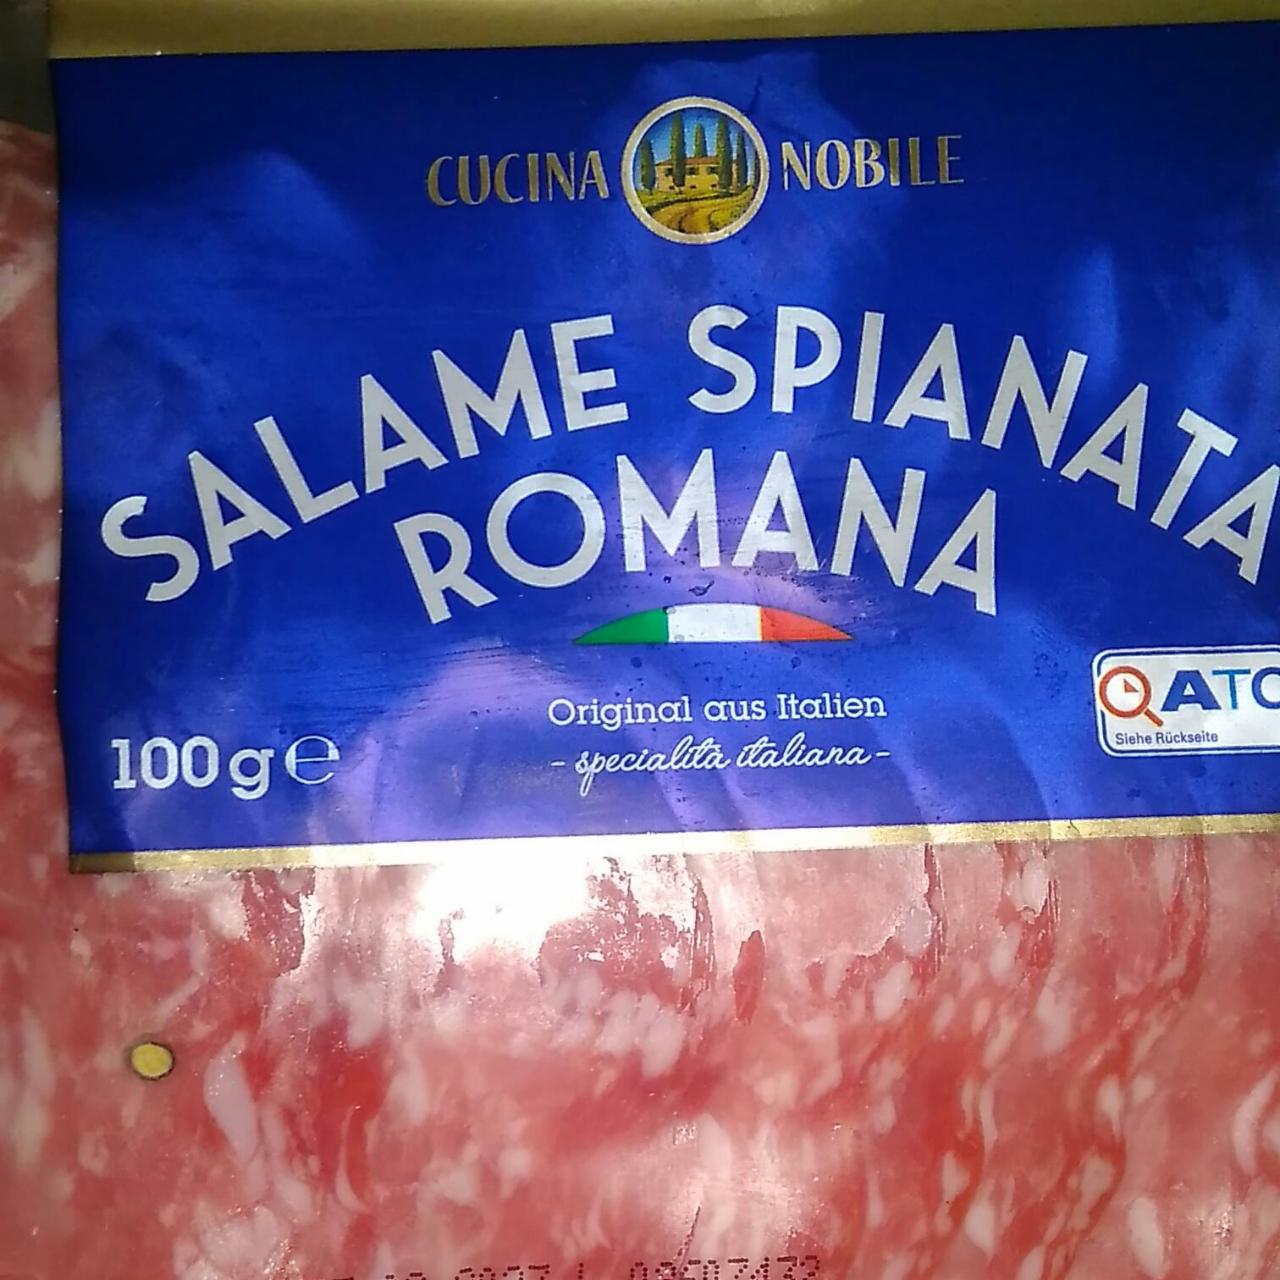 Fotografie - Salame Spianata Romana Cucina Nobile